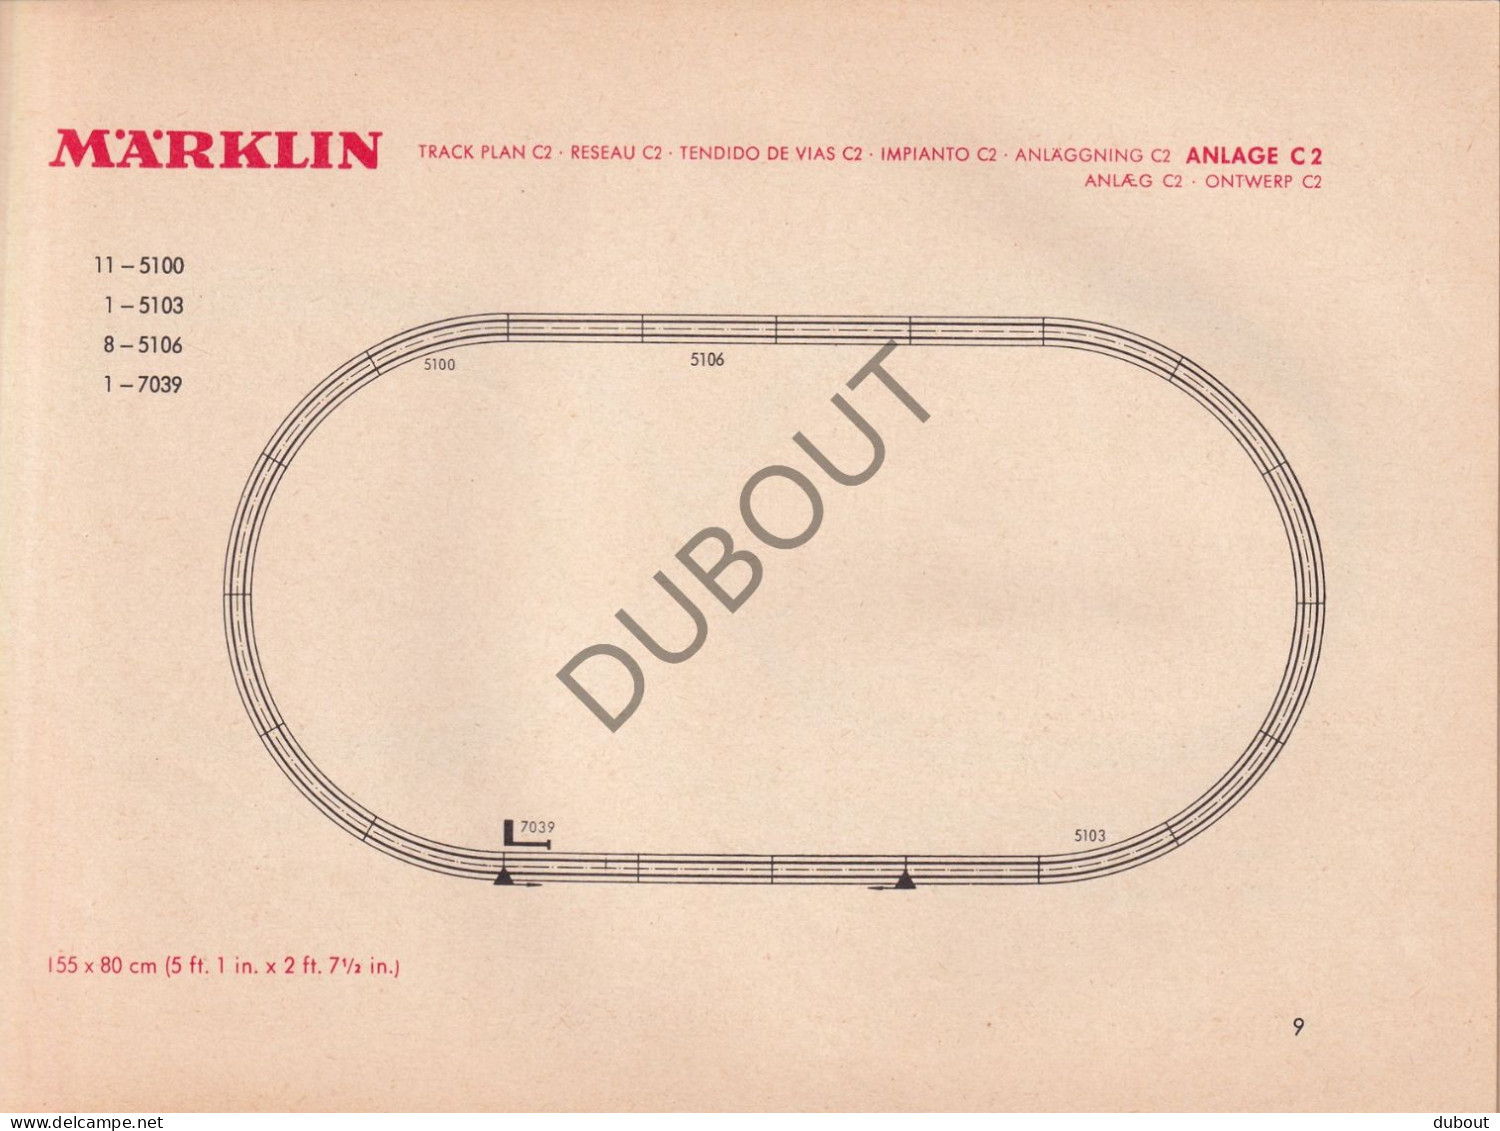 Marklin Cataloog 1965  (V3020) - Catálogos